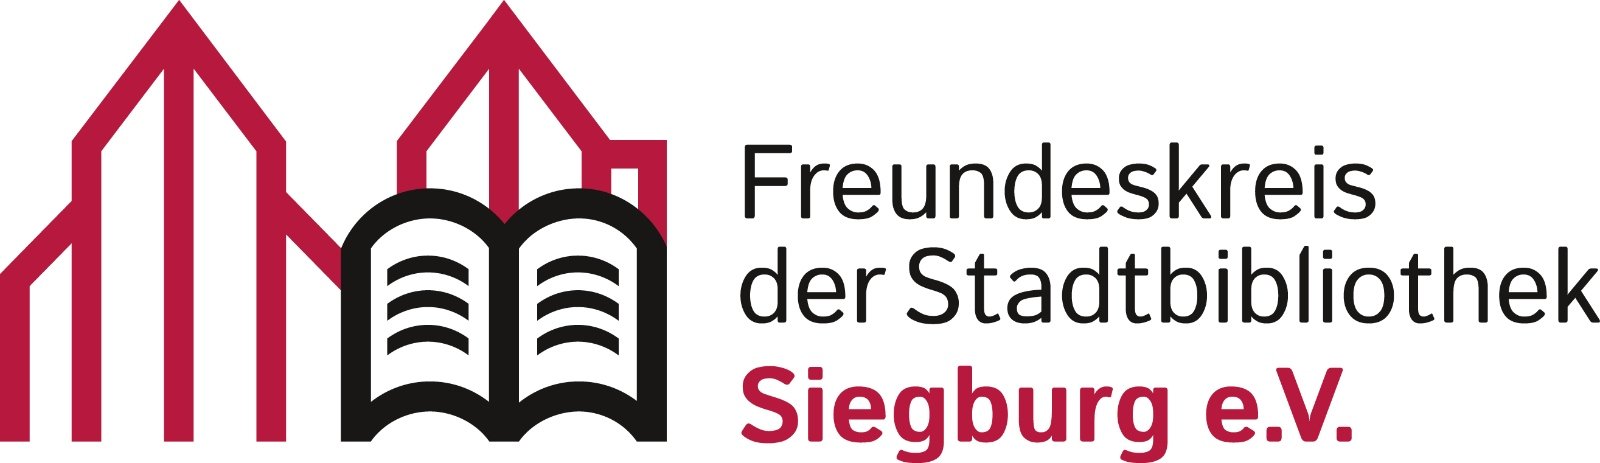 Freundeskreis der Stadtbibliothek Siegburg_Logo